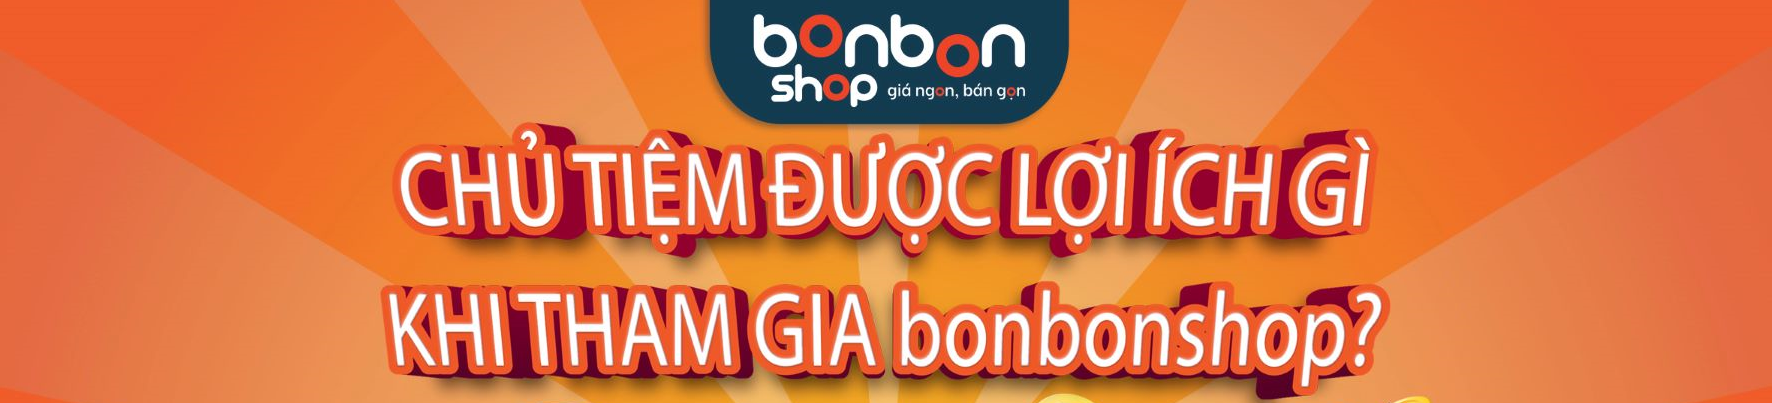 CHỦ TIỆM ĐƯỢC LỢI ÍCH GÌ KHI THAM GIA bonbon shop?